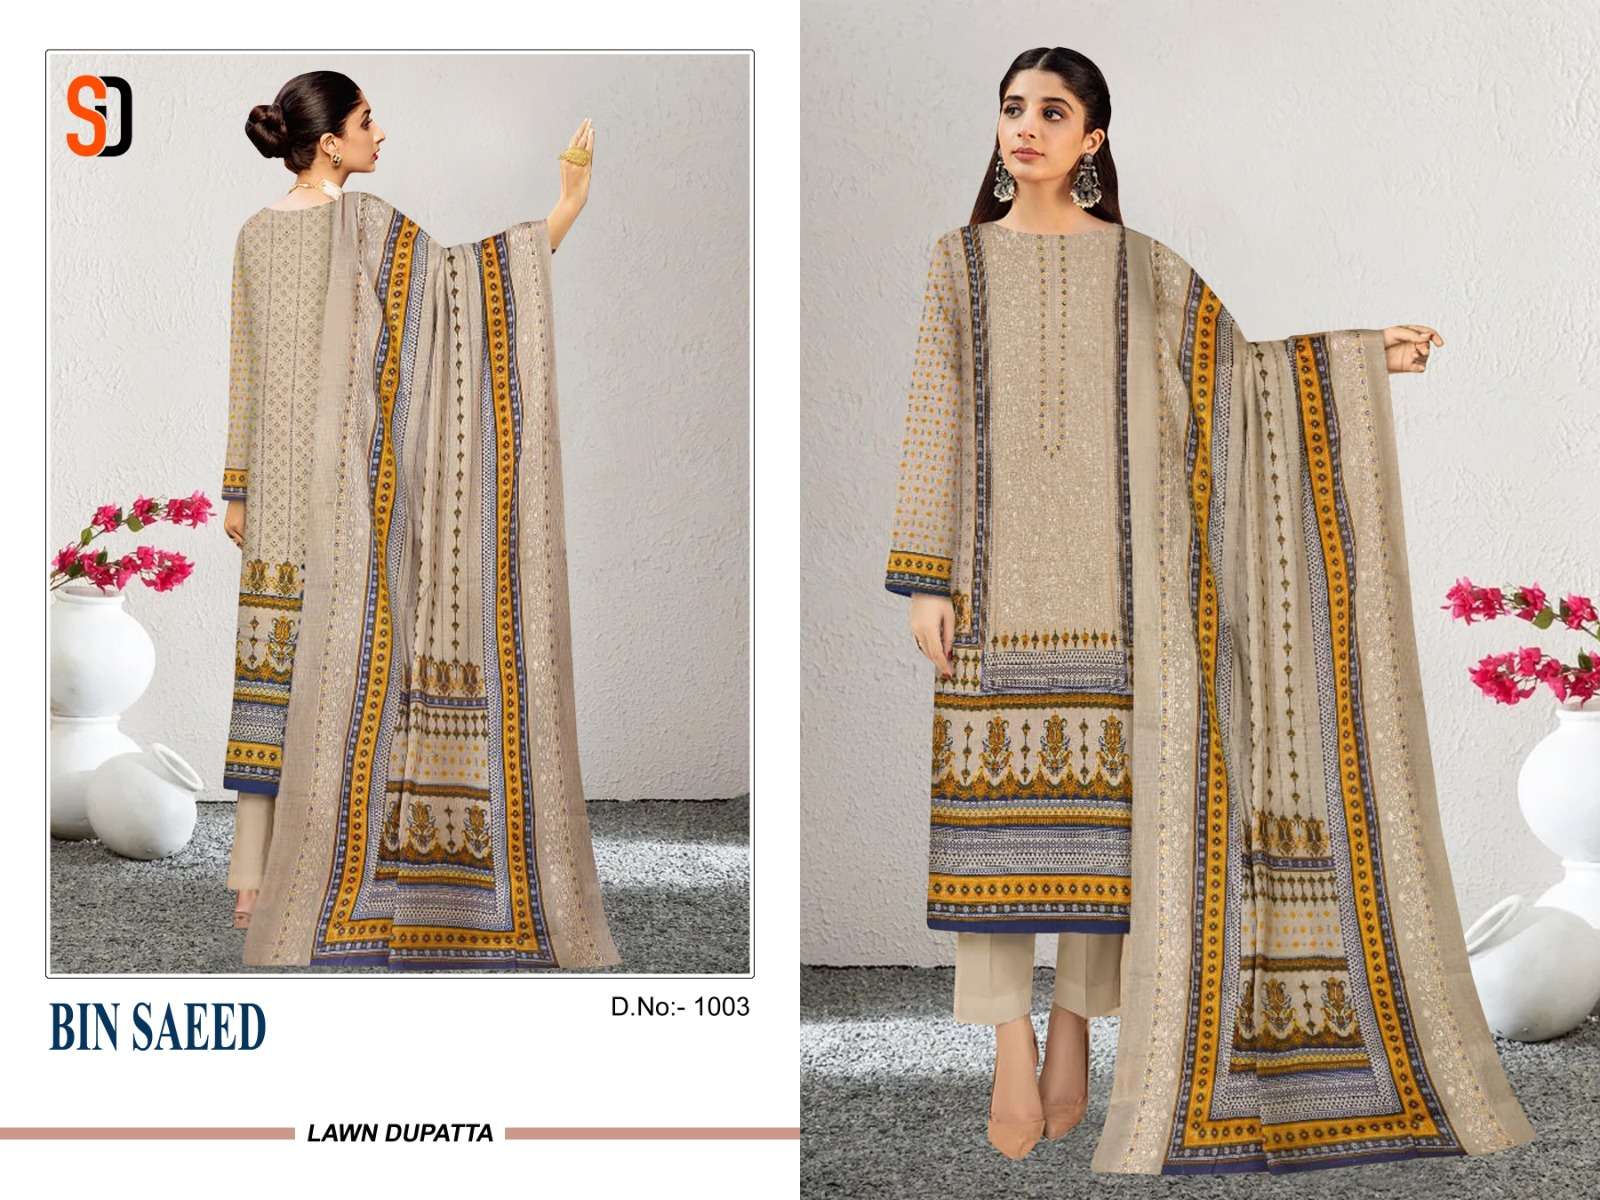 shraddha designer bin saeed 1001-1003 series lawn cotton designer salwar kameez in surat 